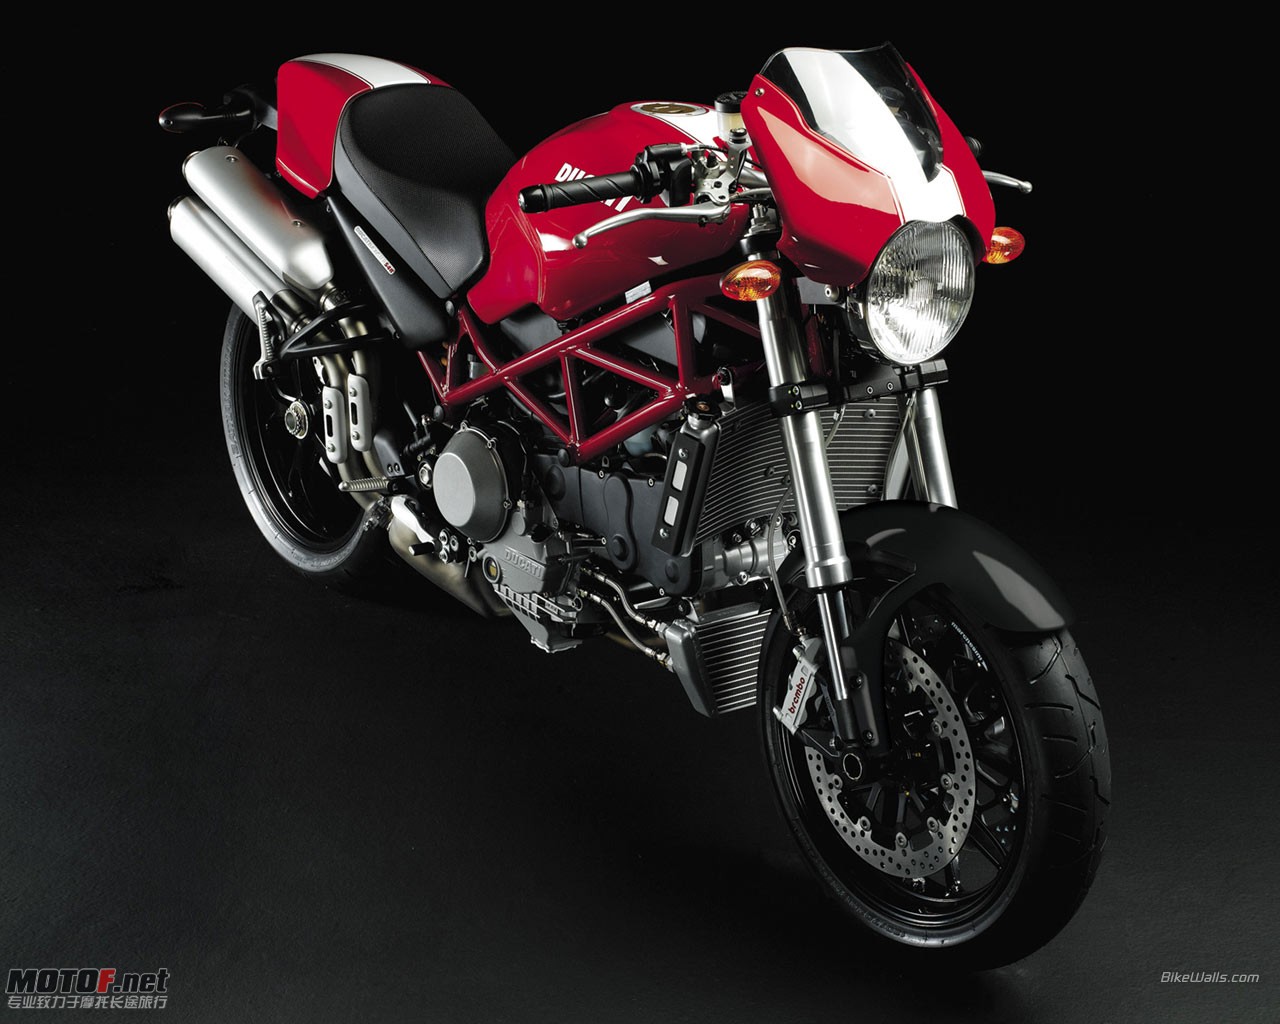 Ducati_Monster_S4R_2007_08_1280x1024.jpg